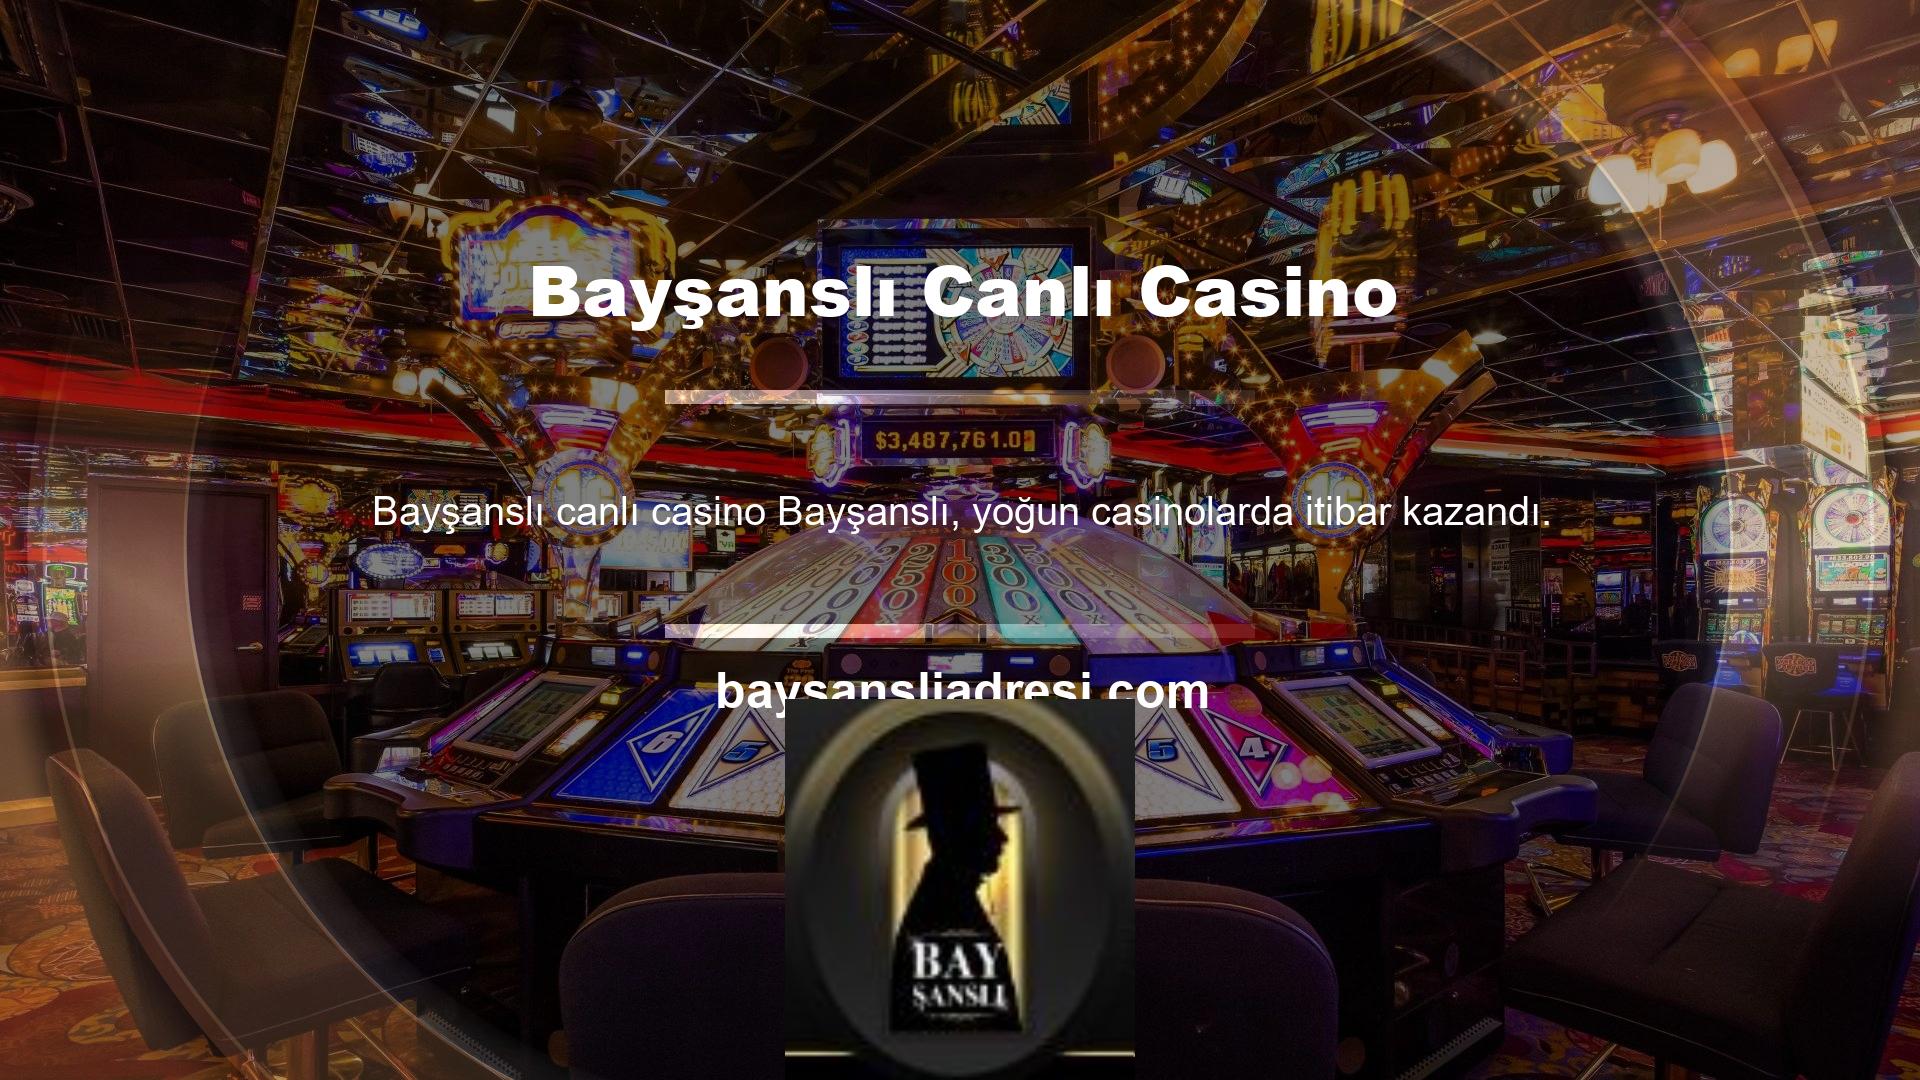 Canlı casinolar günümüzde yüksek talep görmektedir ve kullanıcı sayısını en üst düzeye çıkarmak için bir seçenektir